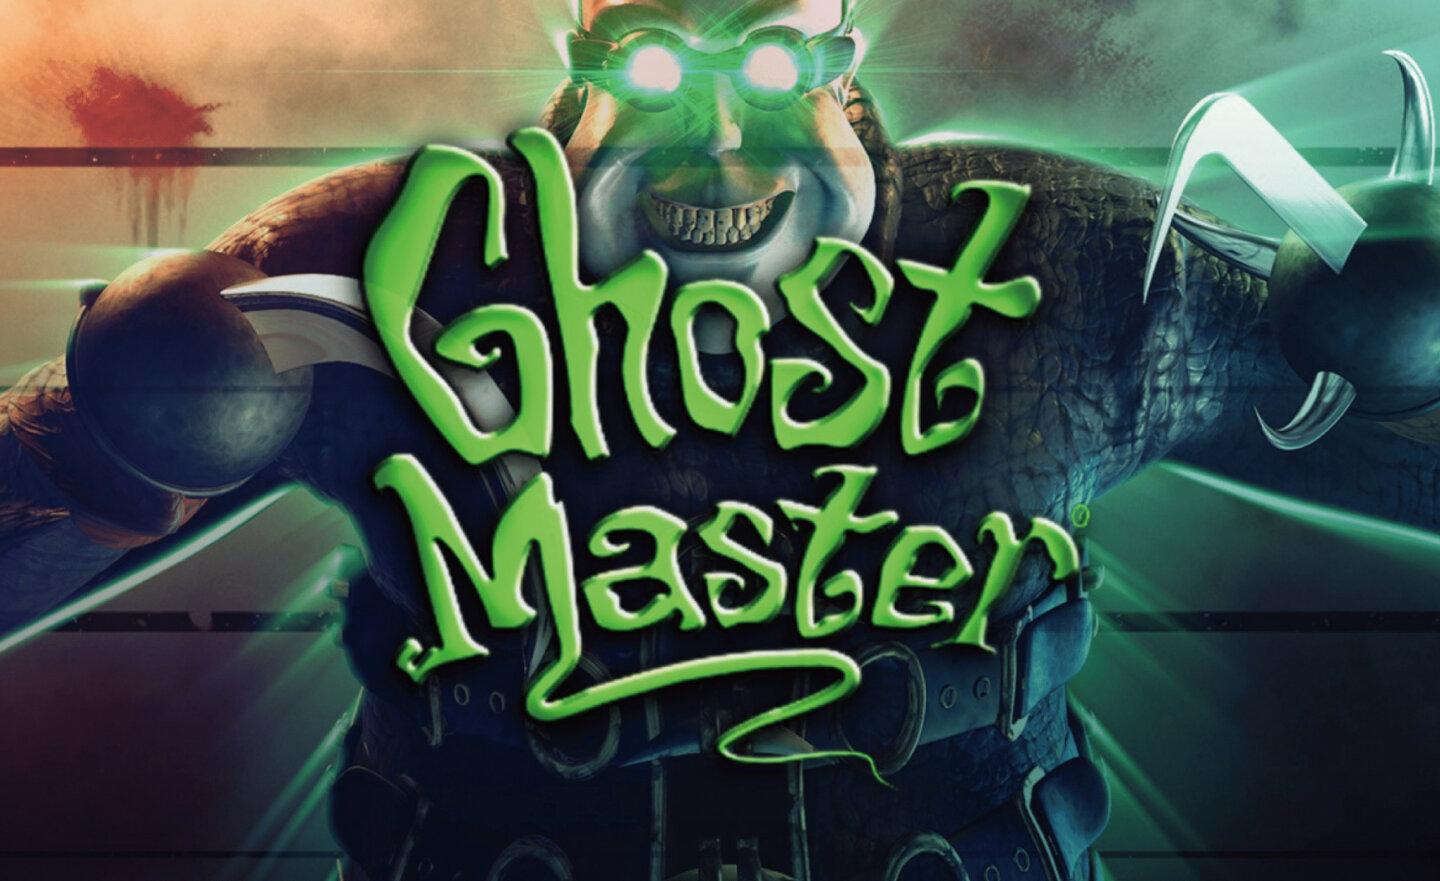 【限時免費】GOG 平台放送搞笑解謎遊戲《Ghost Master 鬼大師》，領取時間至 9 月 7 日晚上 11:00 截止